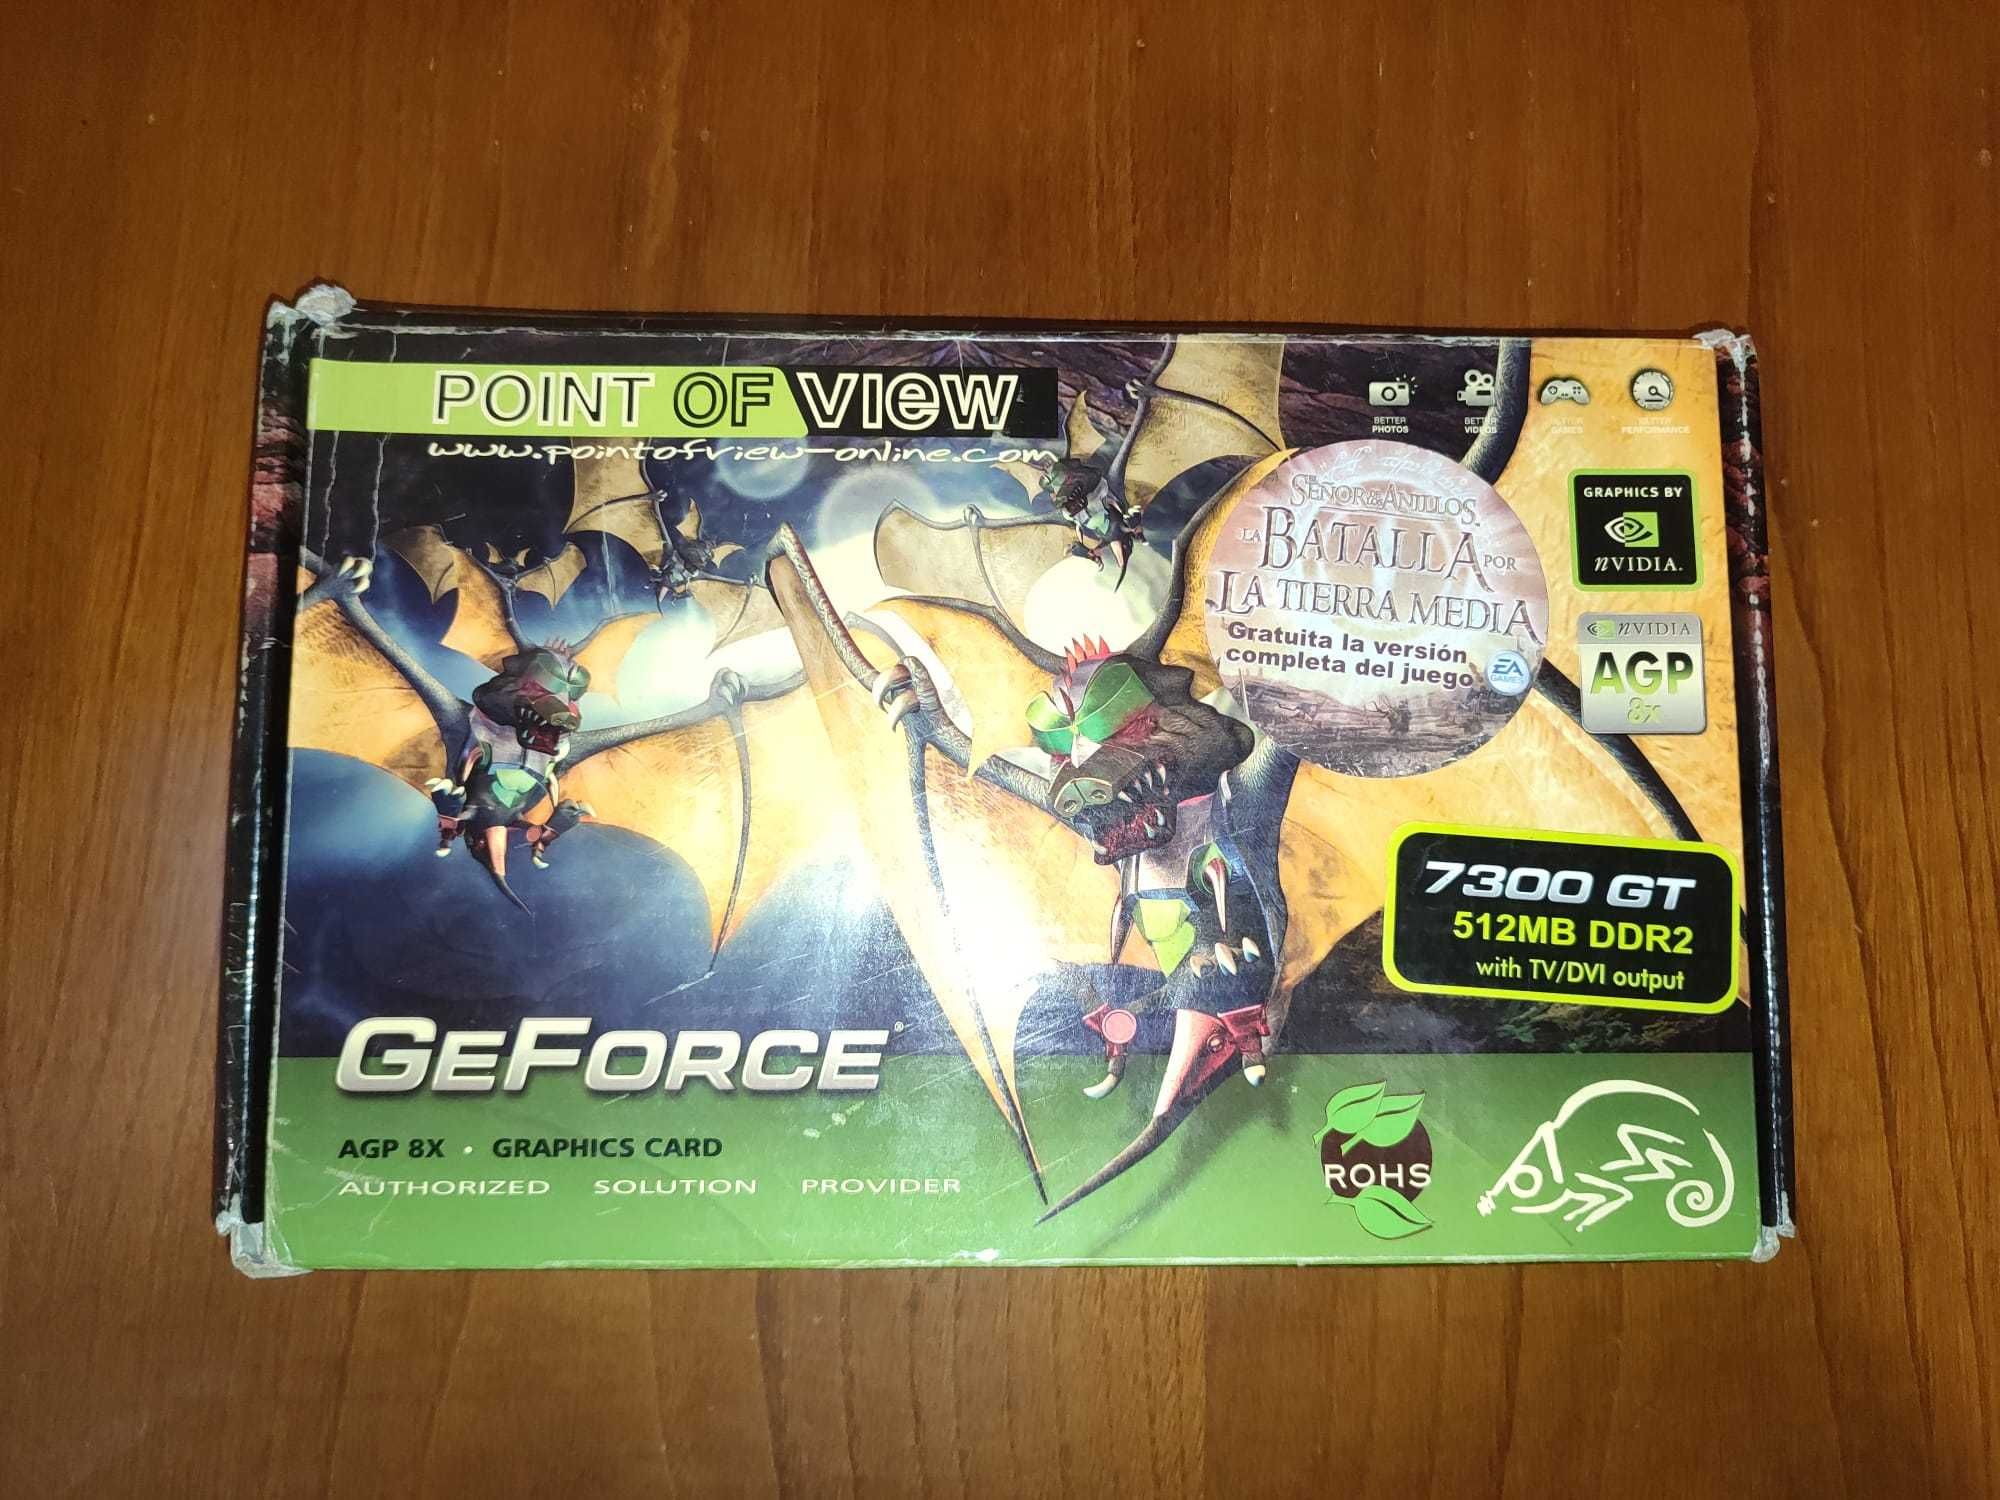 GeForce 7300 GT AGP